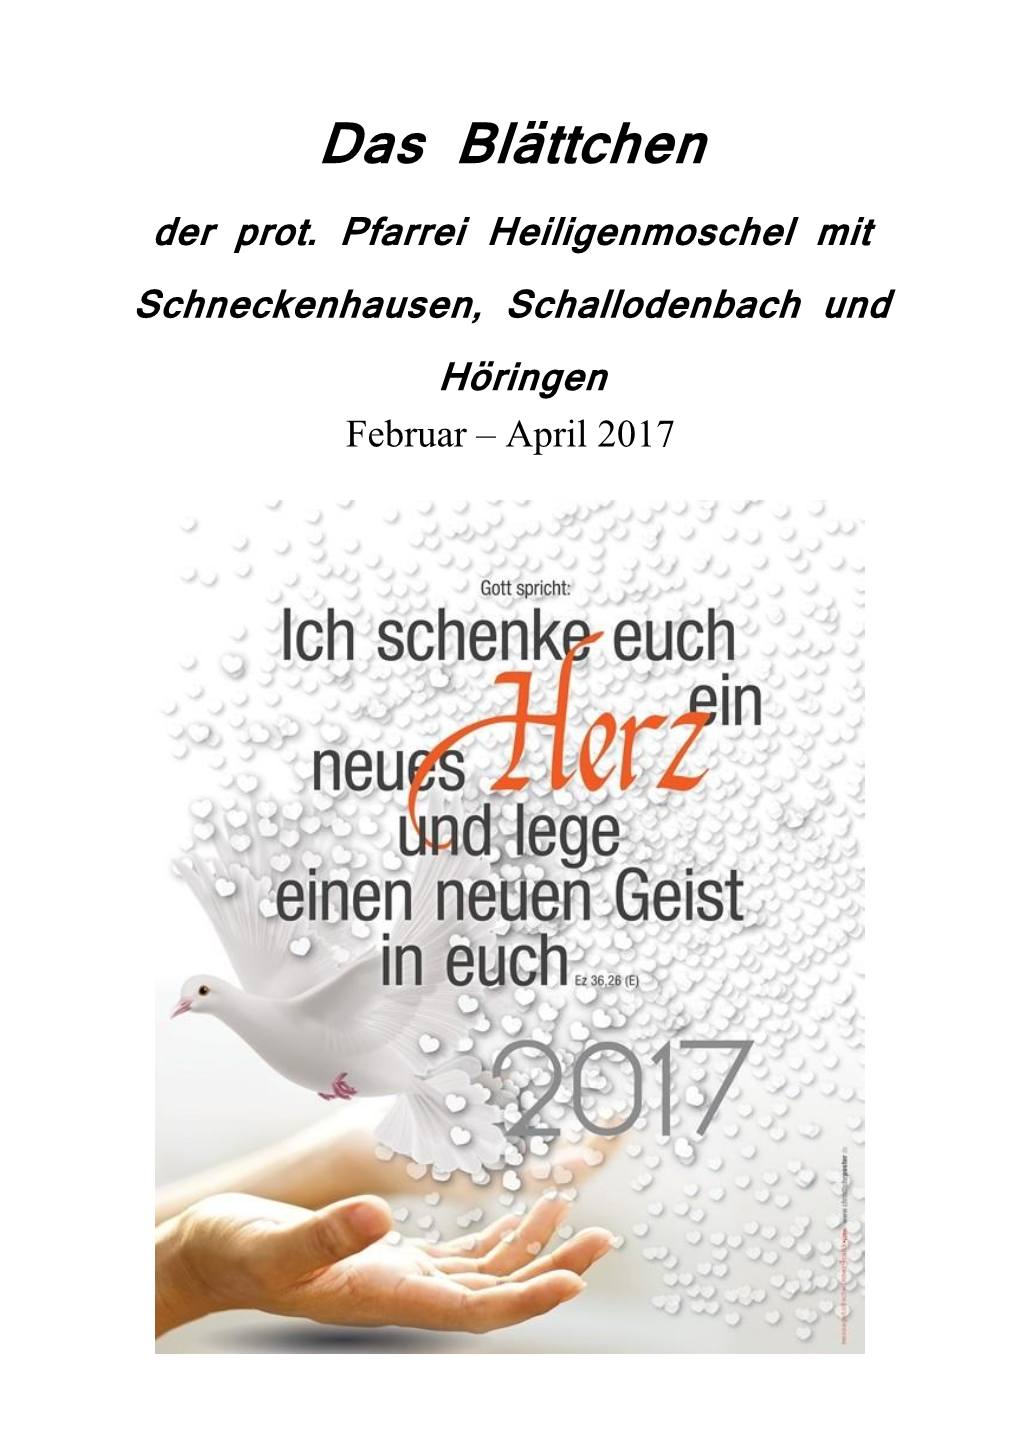 Das Blättchen Der Prot. Pfarrei Heiligenmoschel Mit Schneckenhausen, Schallodenbach Und Höringen Februar – April 2017